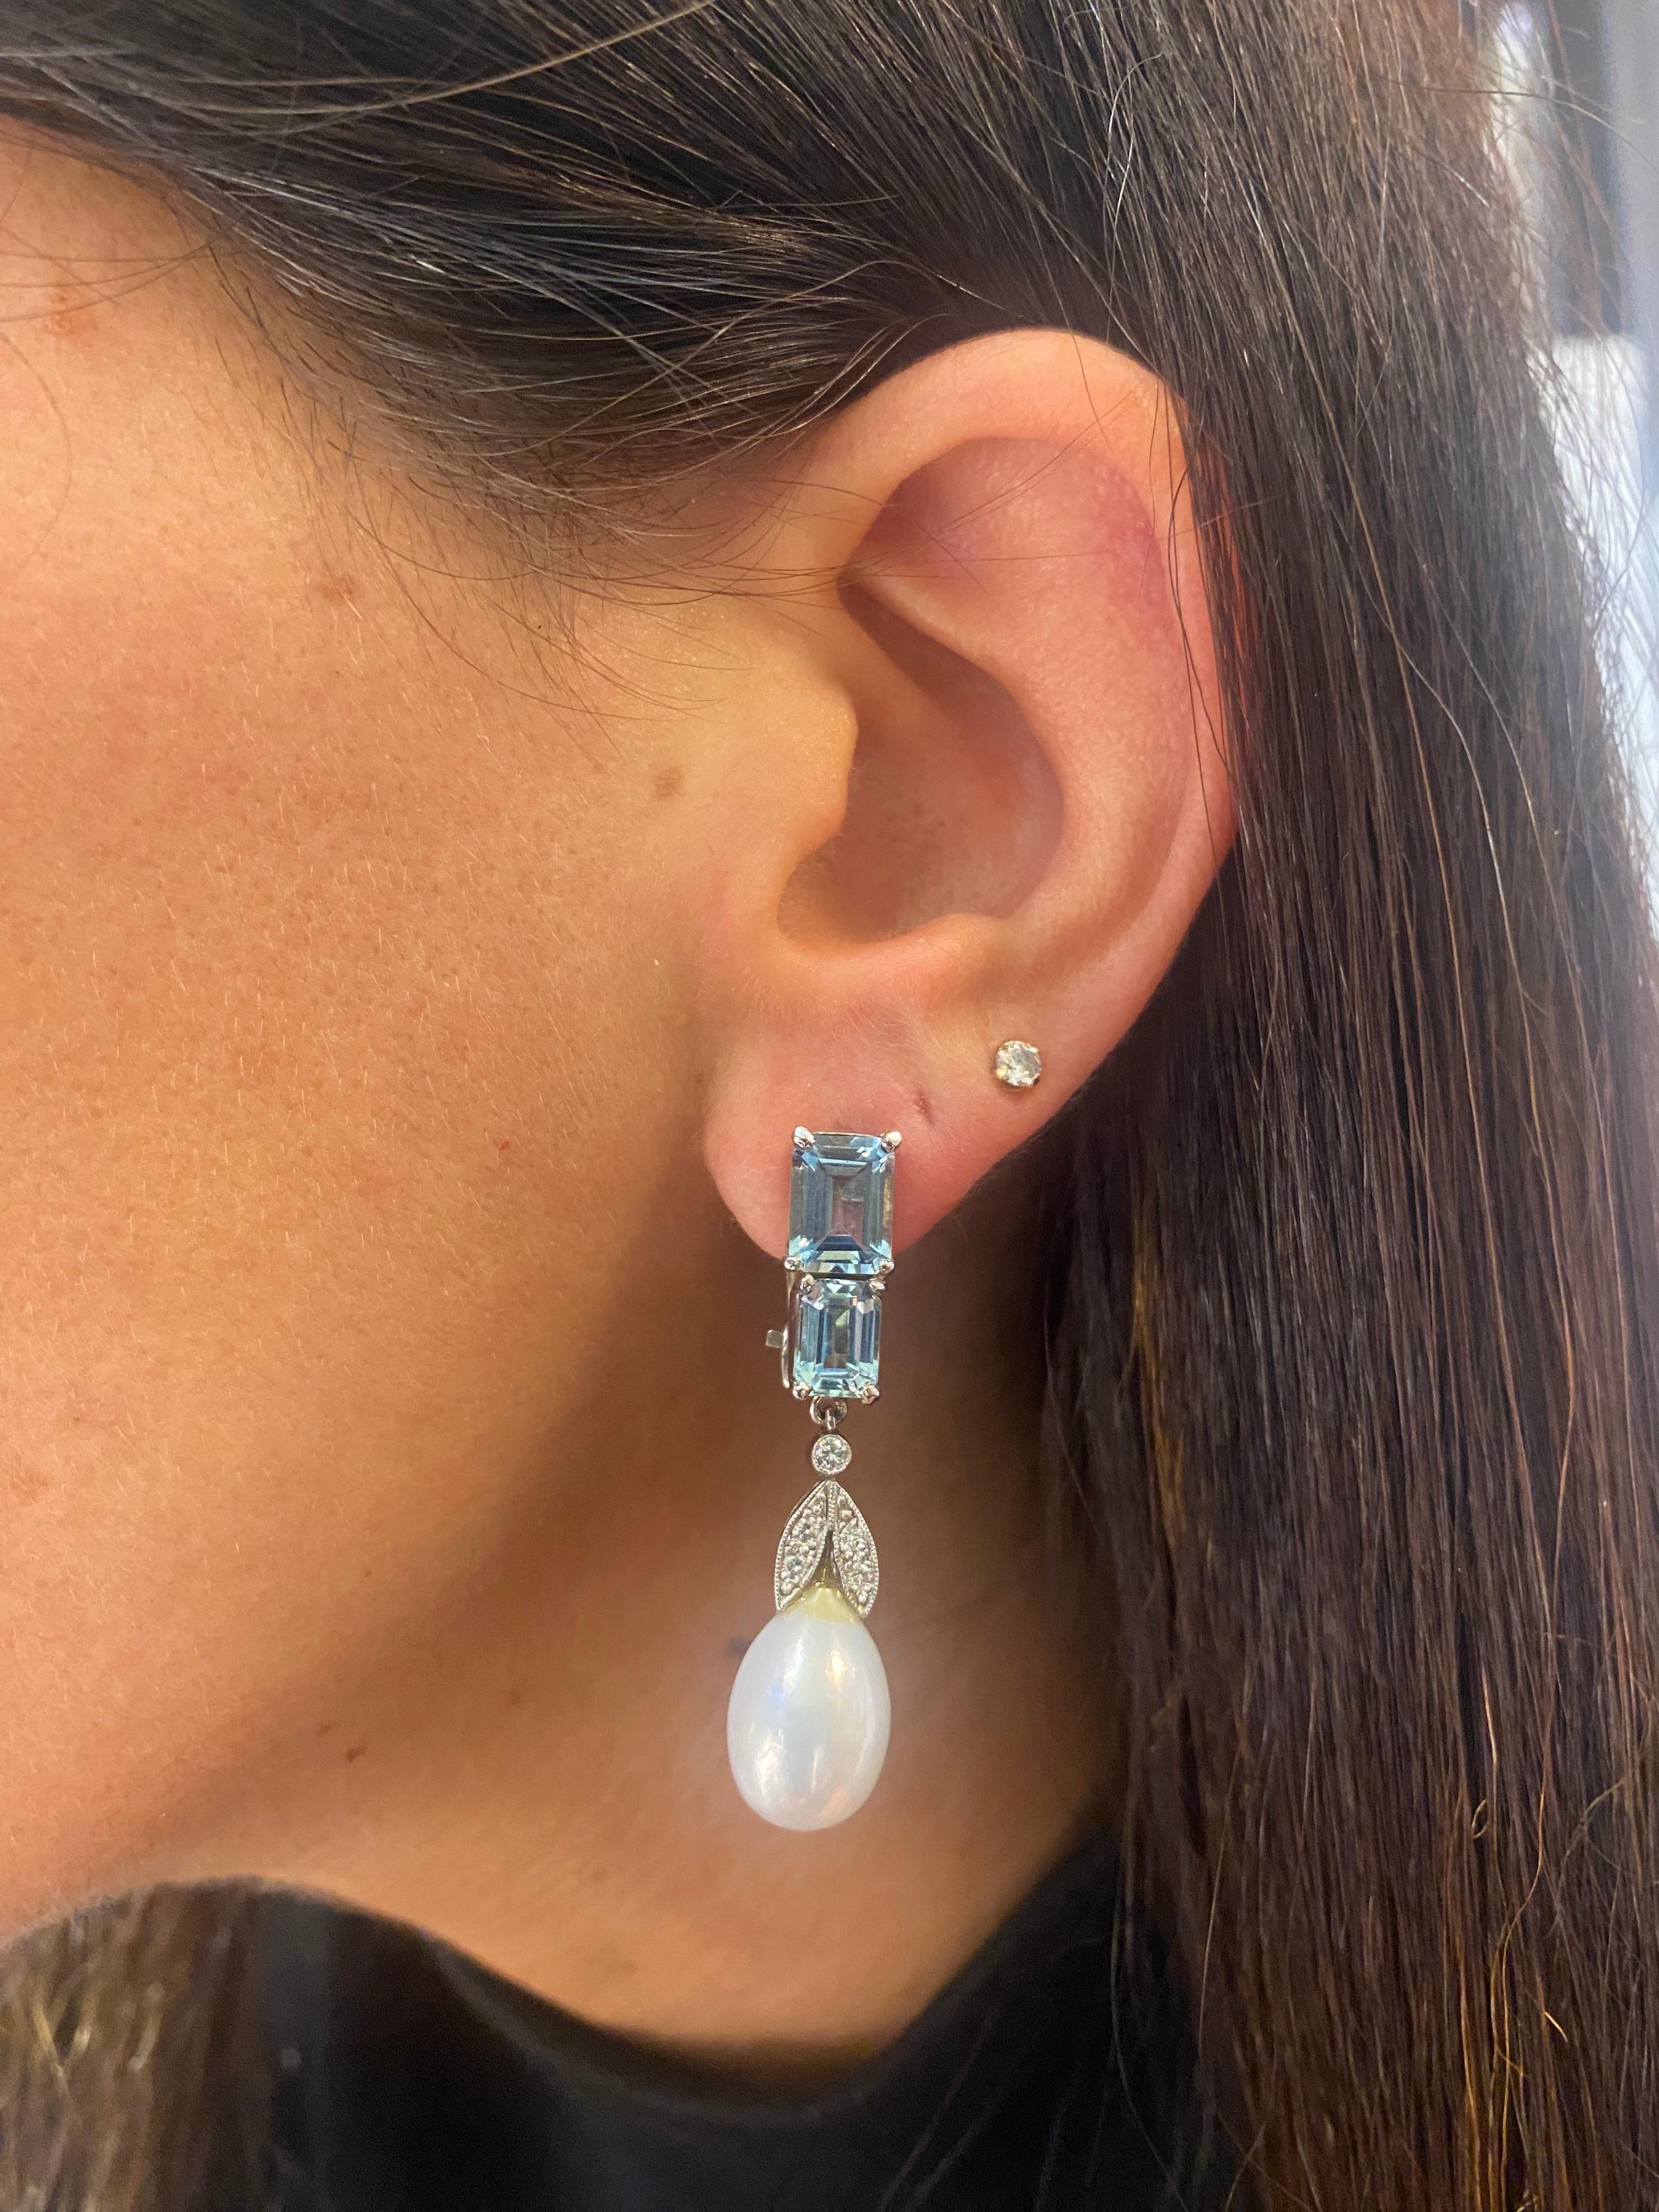 Aquamarin- und Perlen-Ohrringe

Ohrringe aus Aquamarin im Smaragdschliff mit 2 Zuchtperlen, verziert mit Diamanten im Rundschliff. 

Ungefähres Gewicht des Aquamarins: 4,23 Karat 
Ungefähres Diamantgewicht: 0,16 Karat
Ungefähre Maße der Perlen: 9,4